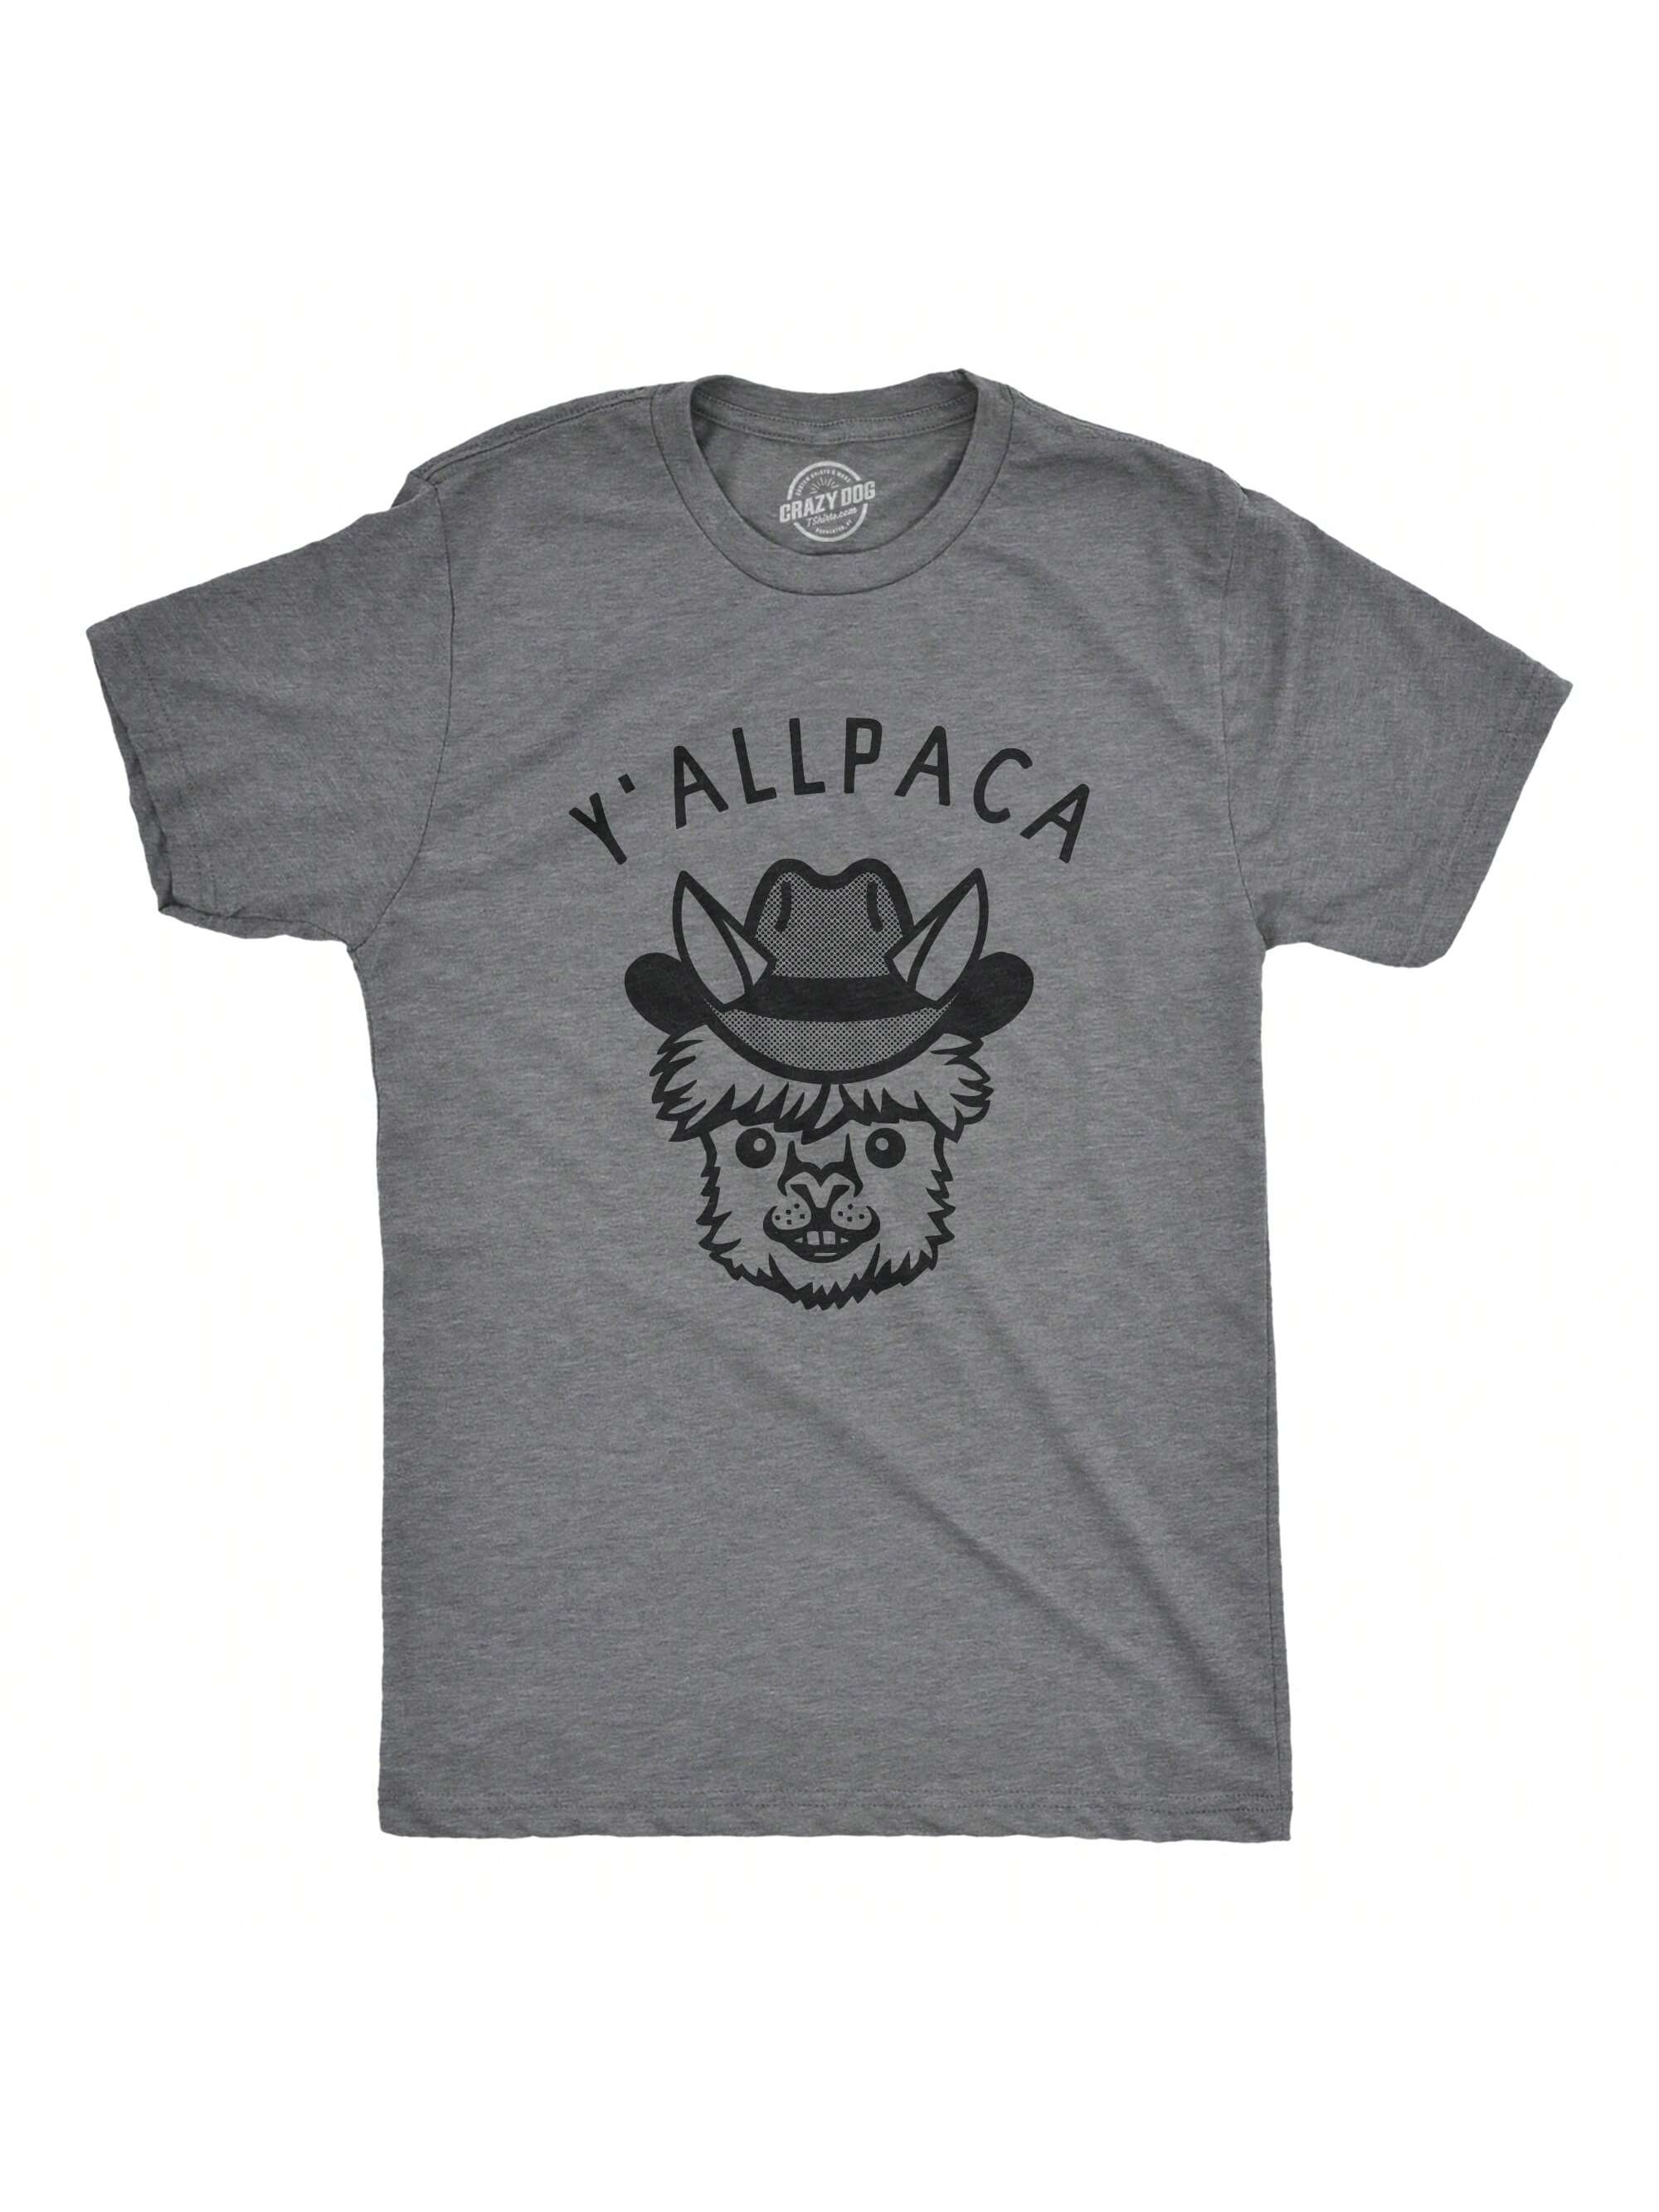 Мужская футболка «Nature Calls» с забавной саркастической надписью «Медведь какает», темно-серый вереск - yallpaca мужская футболка медведь на обеде l черный